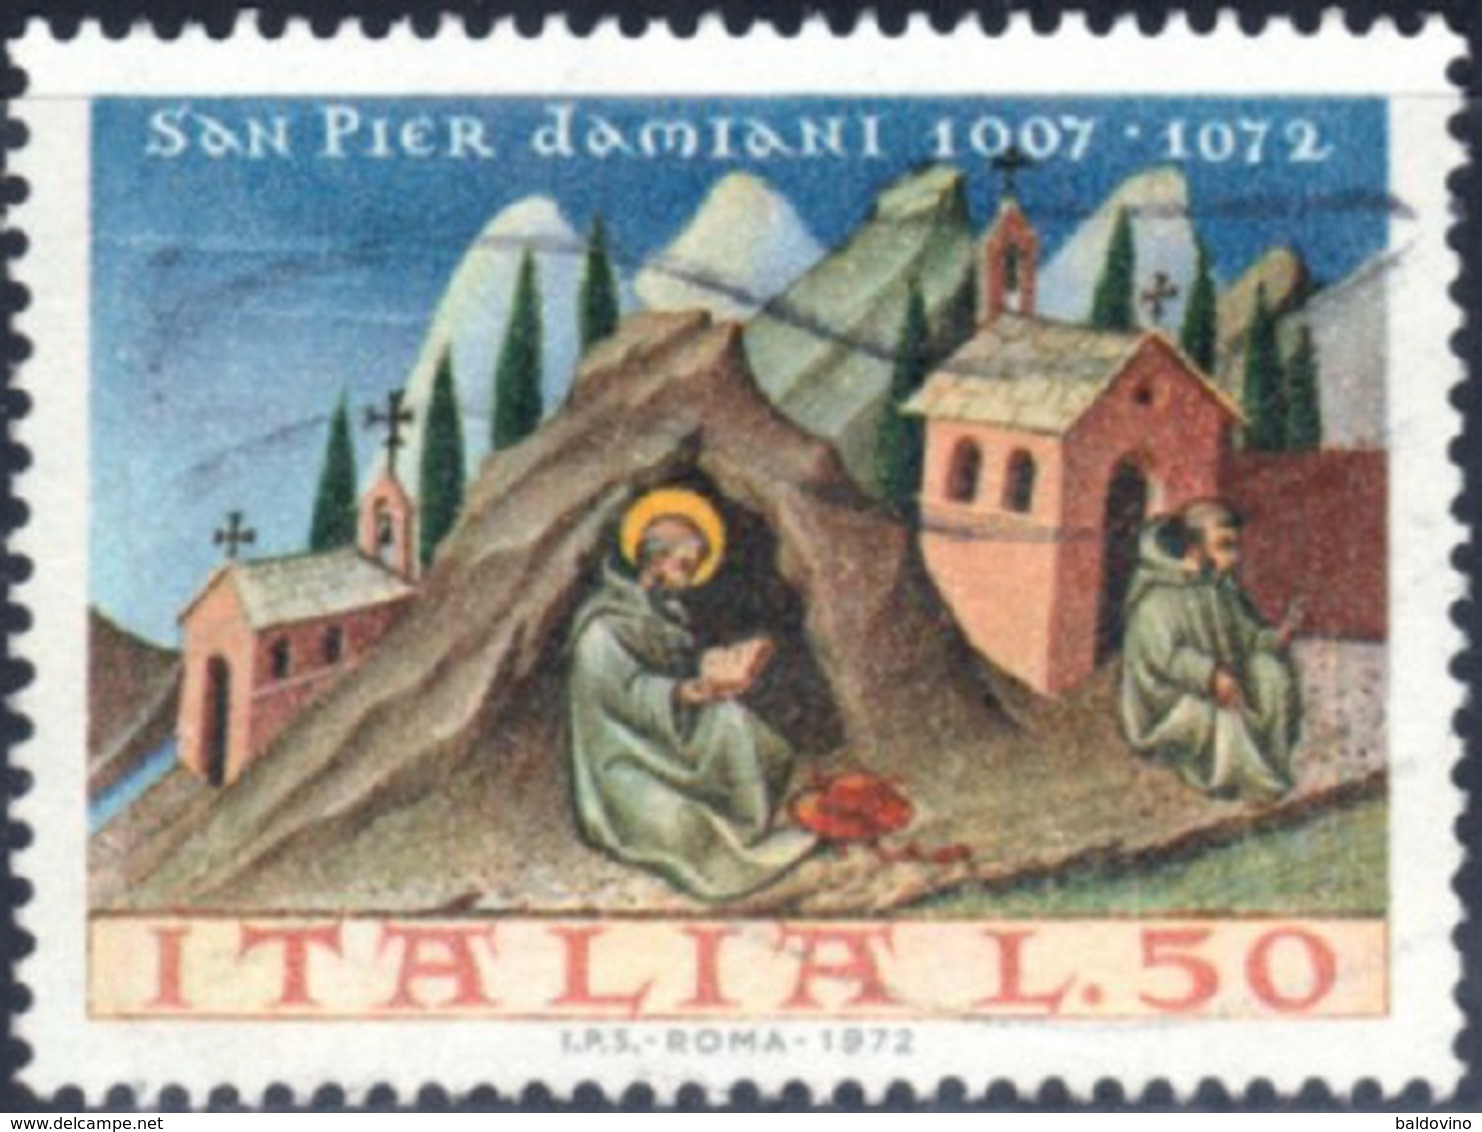 Italia 1972 Lotto 28 valori (vedi descrizione)